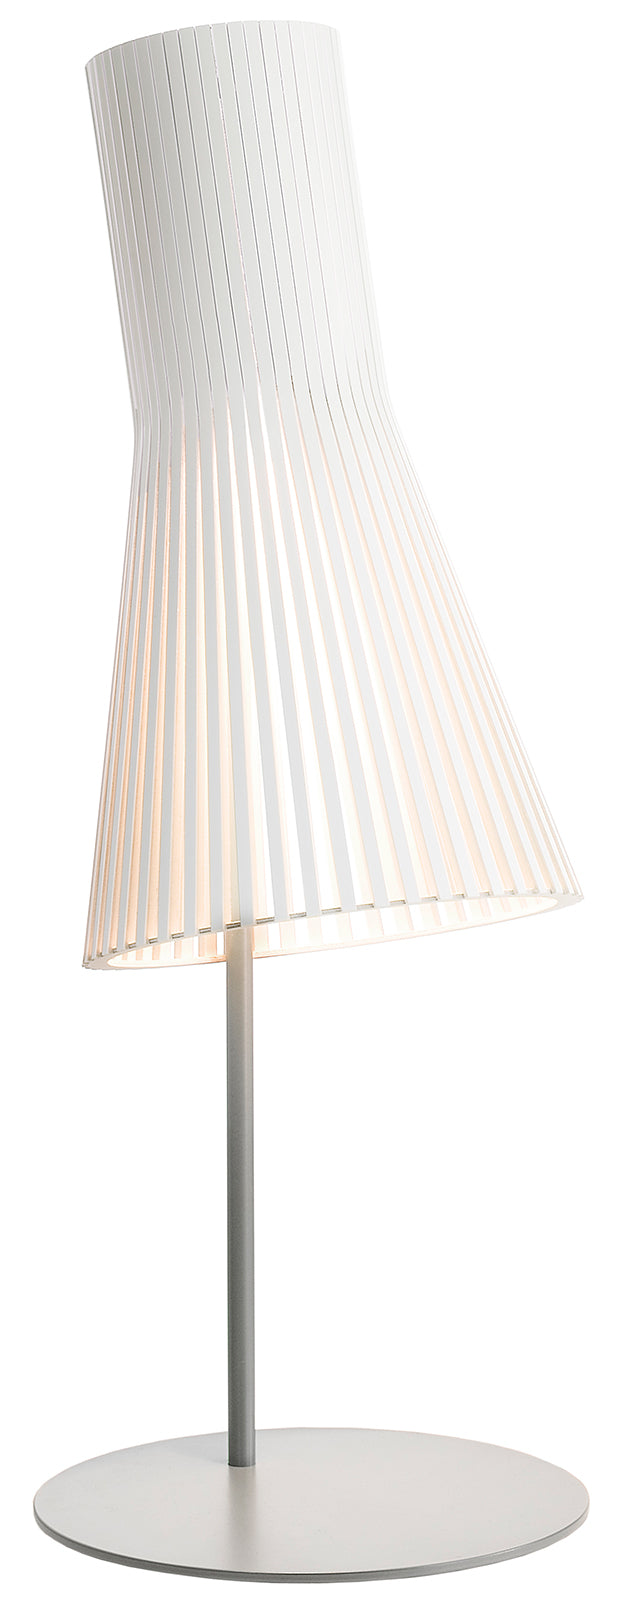 Secto bordlampe 4220 hvid Bordlampe - Vaalea.dk